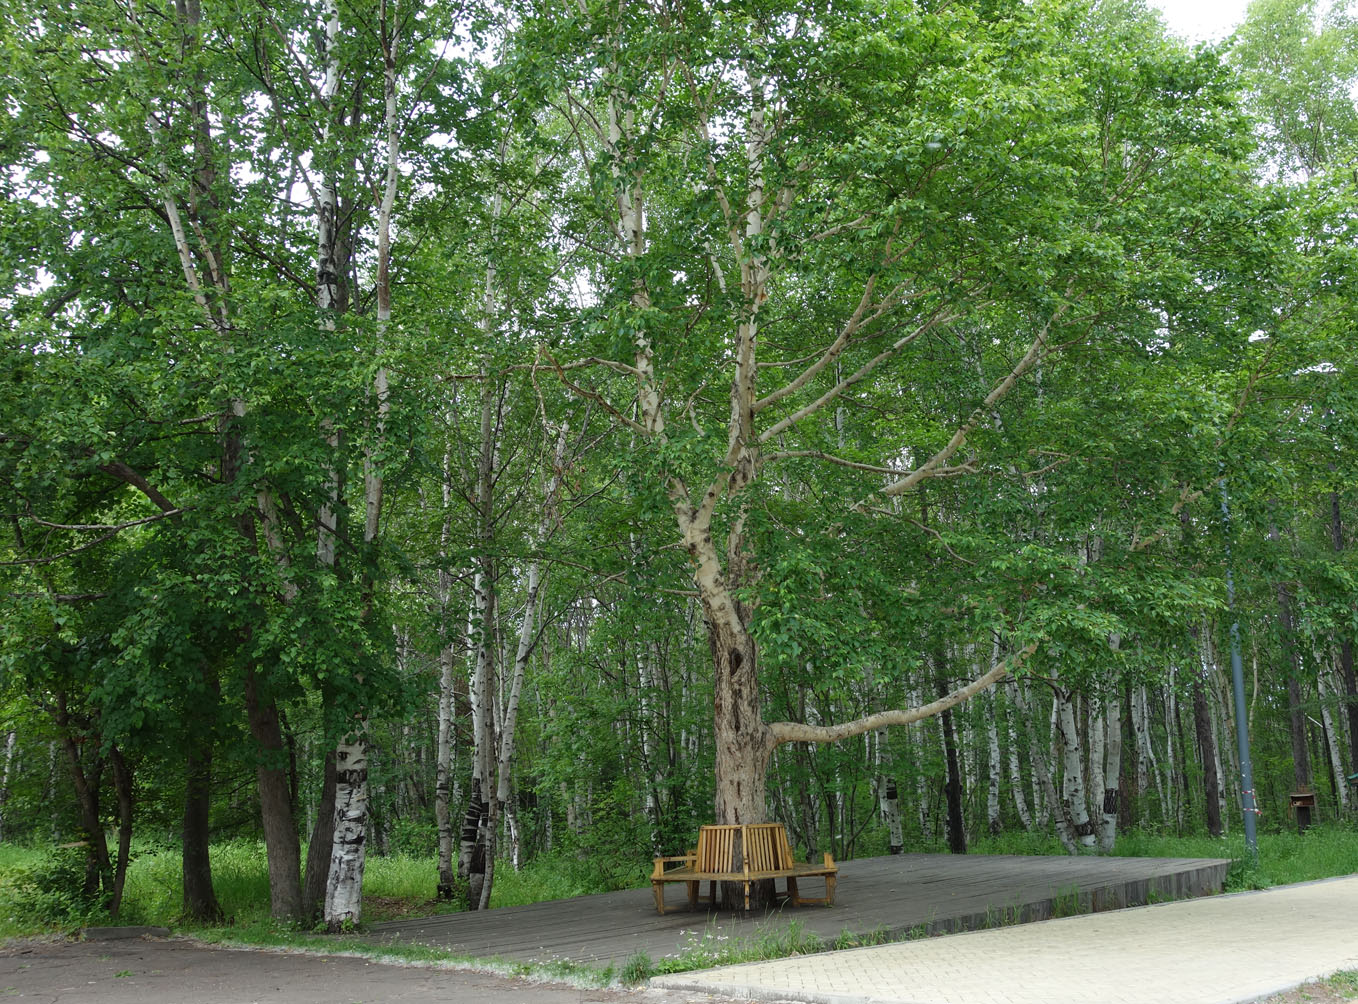 Советская Гавань, image of landscape/habitat.